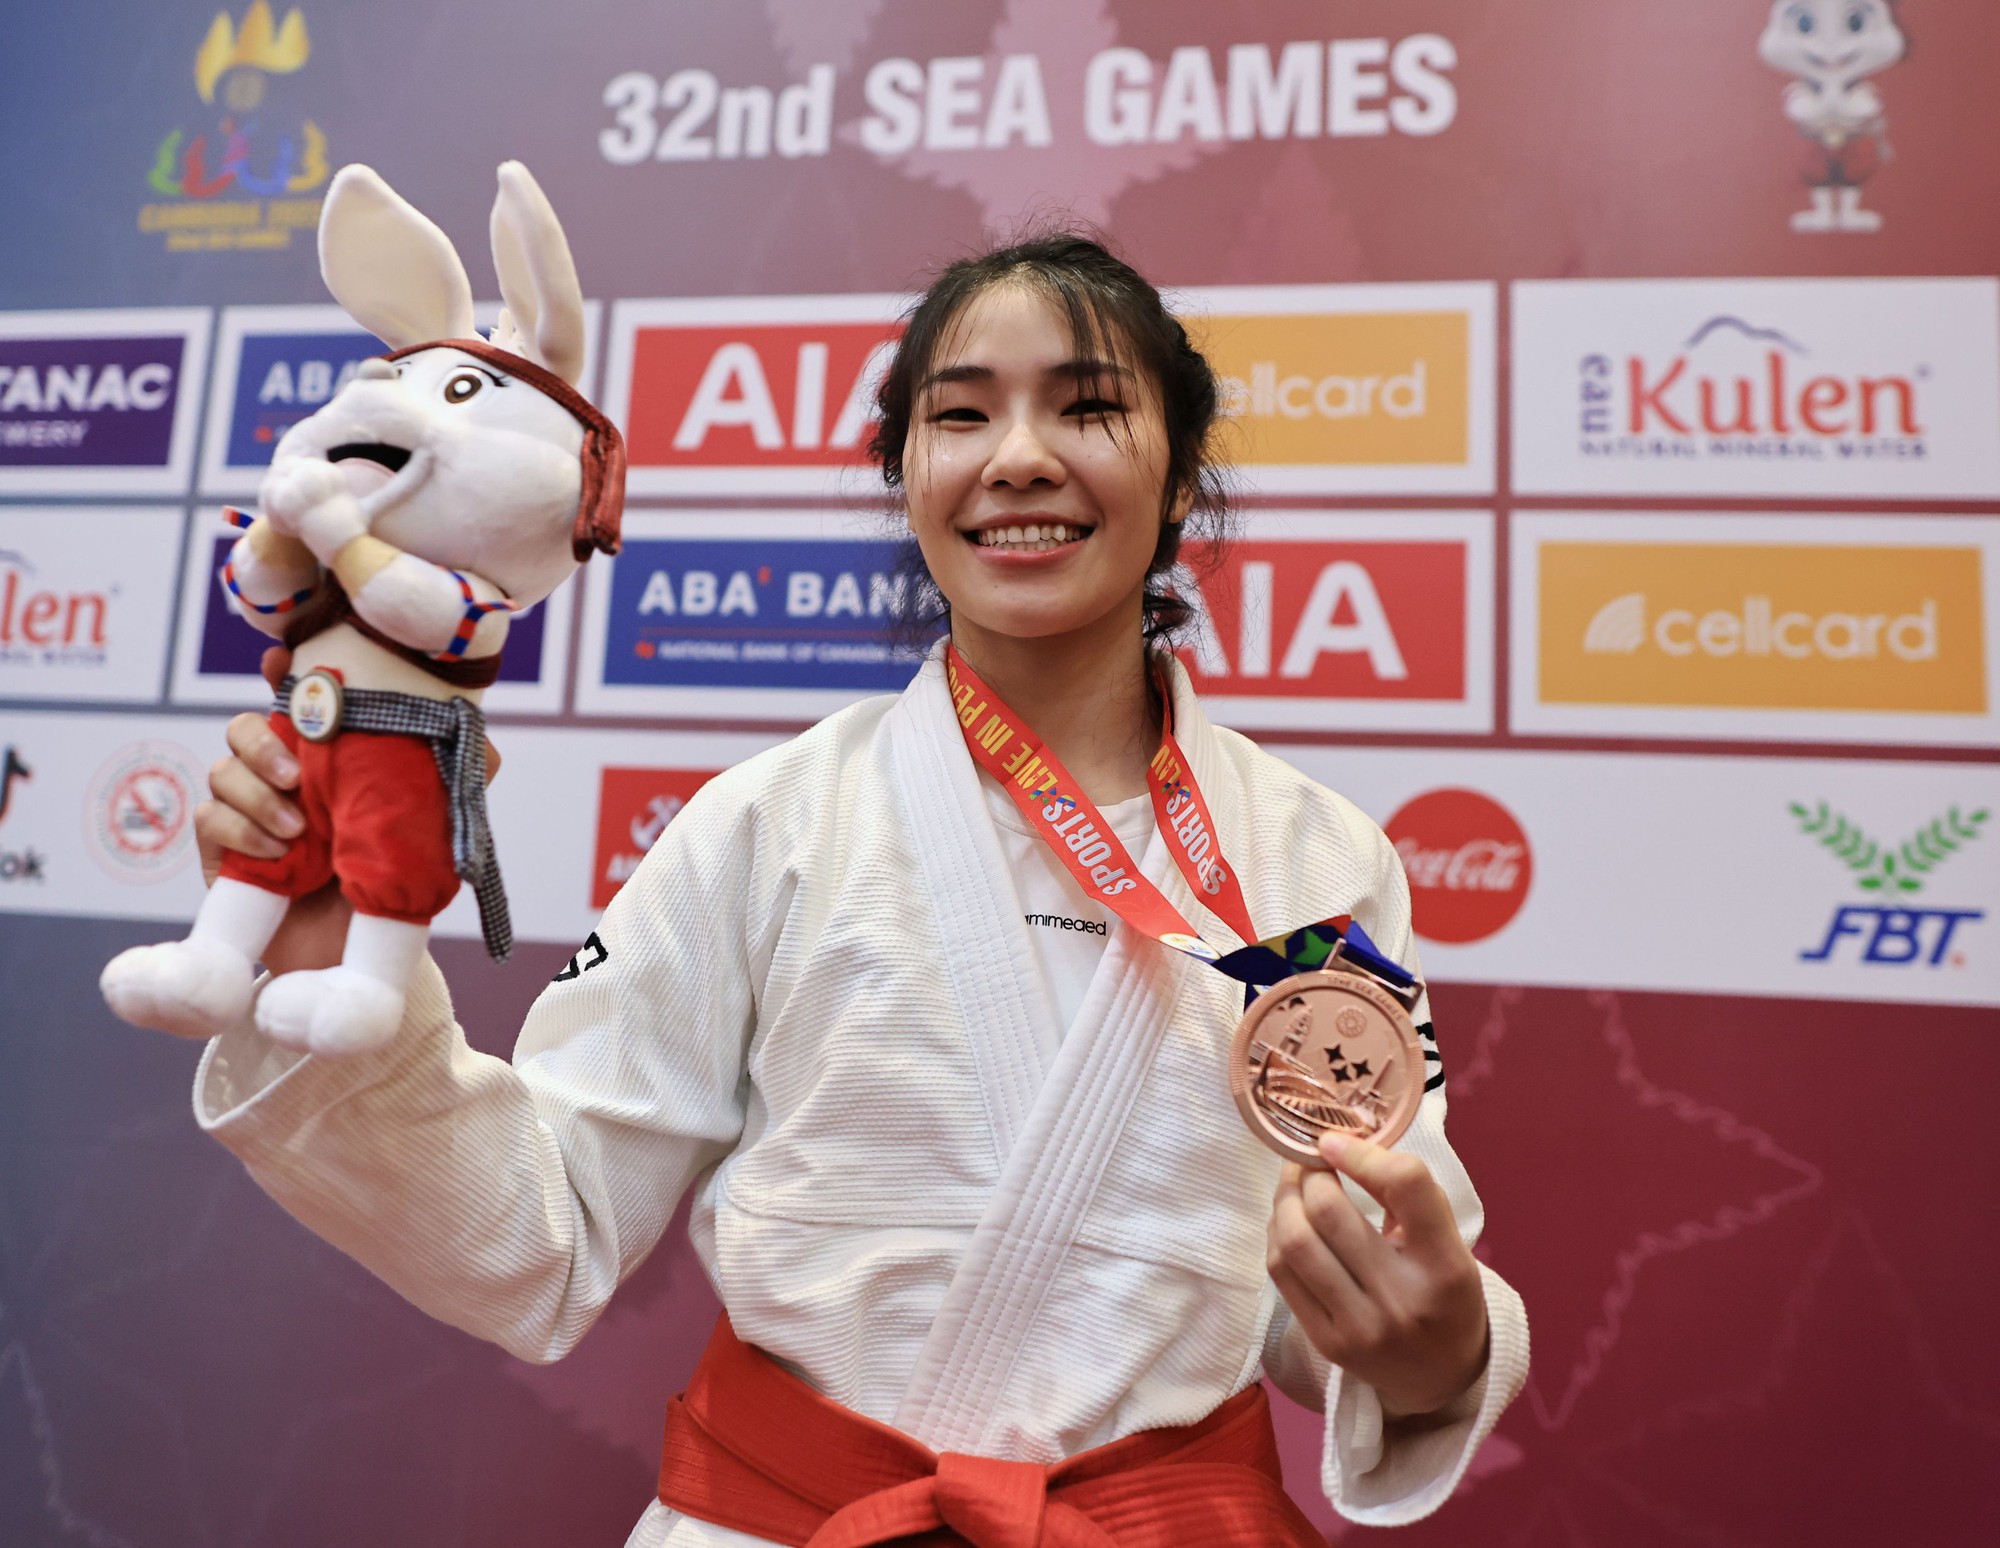 Cận cảnh võ sĩ Việt Nam đầu tiên được trao huy chương SEA Games 32 - Ảnh 2.